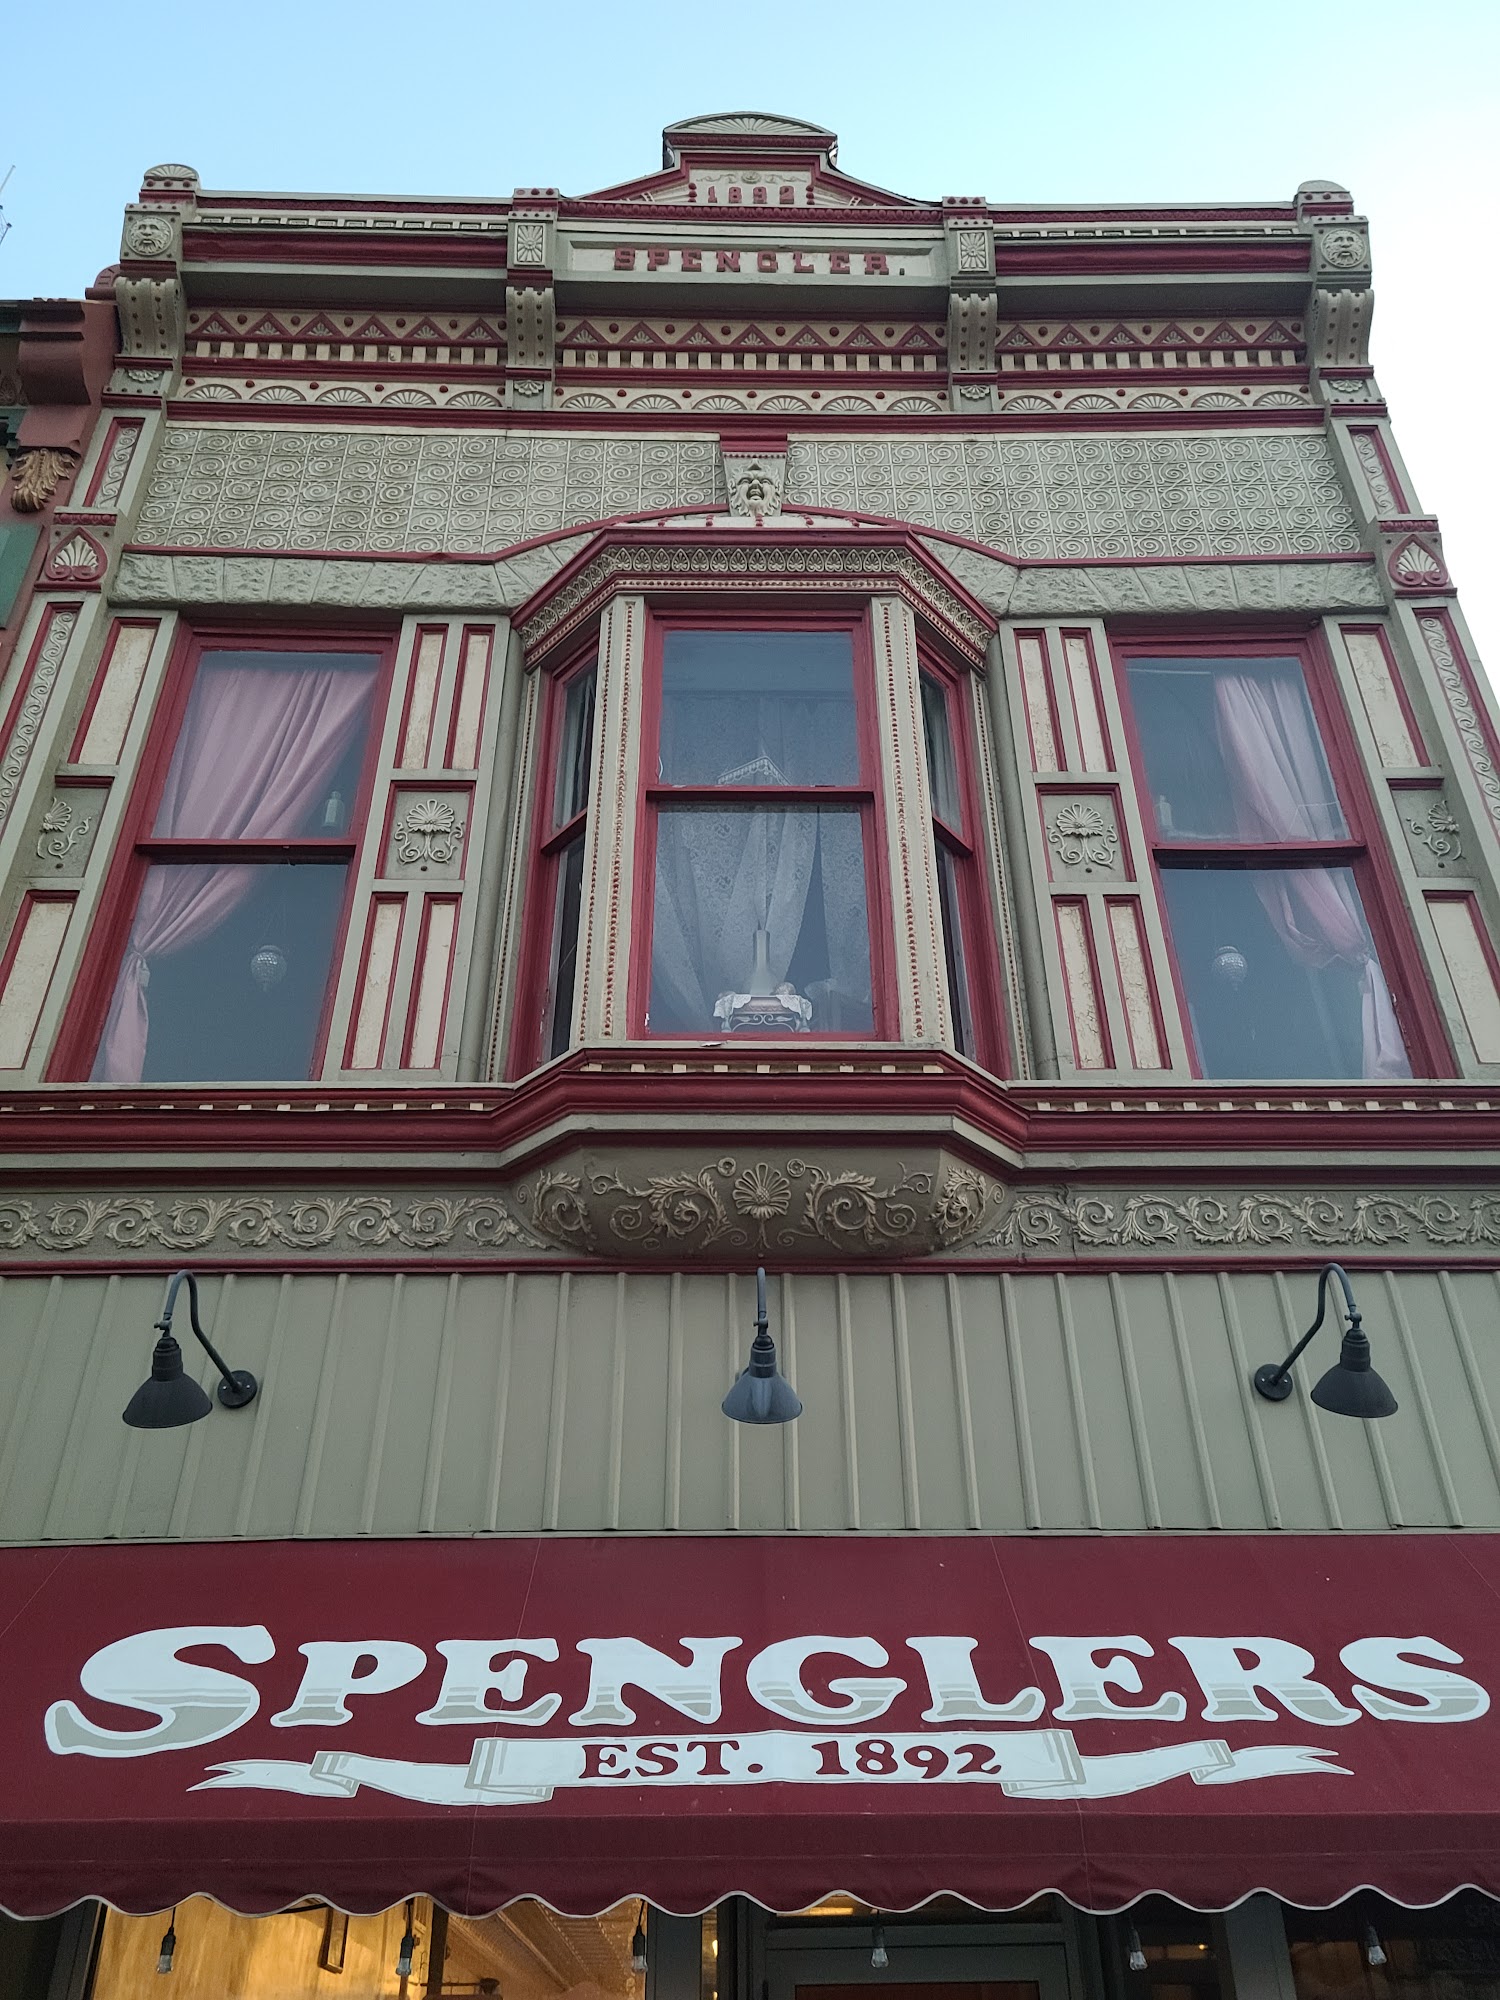 Spengler's